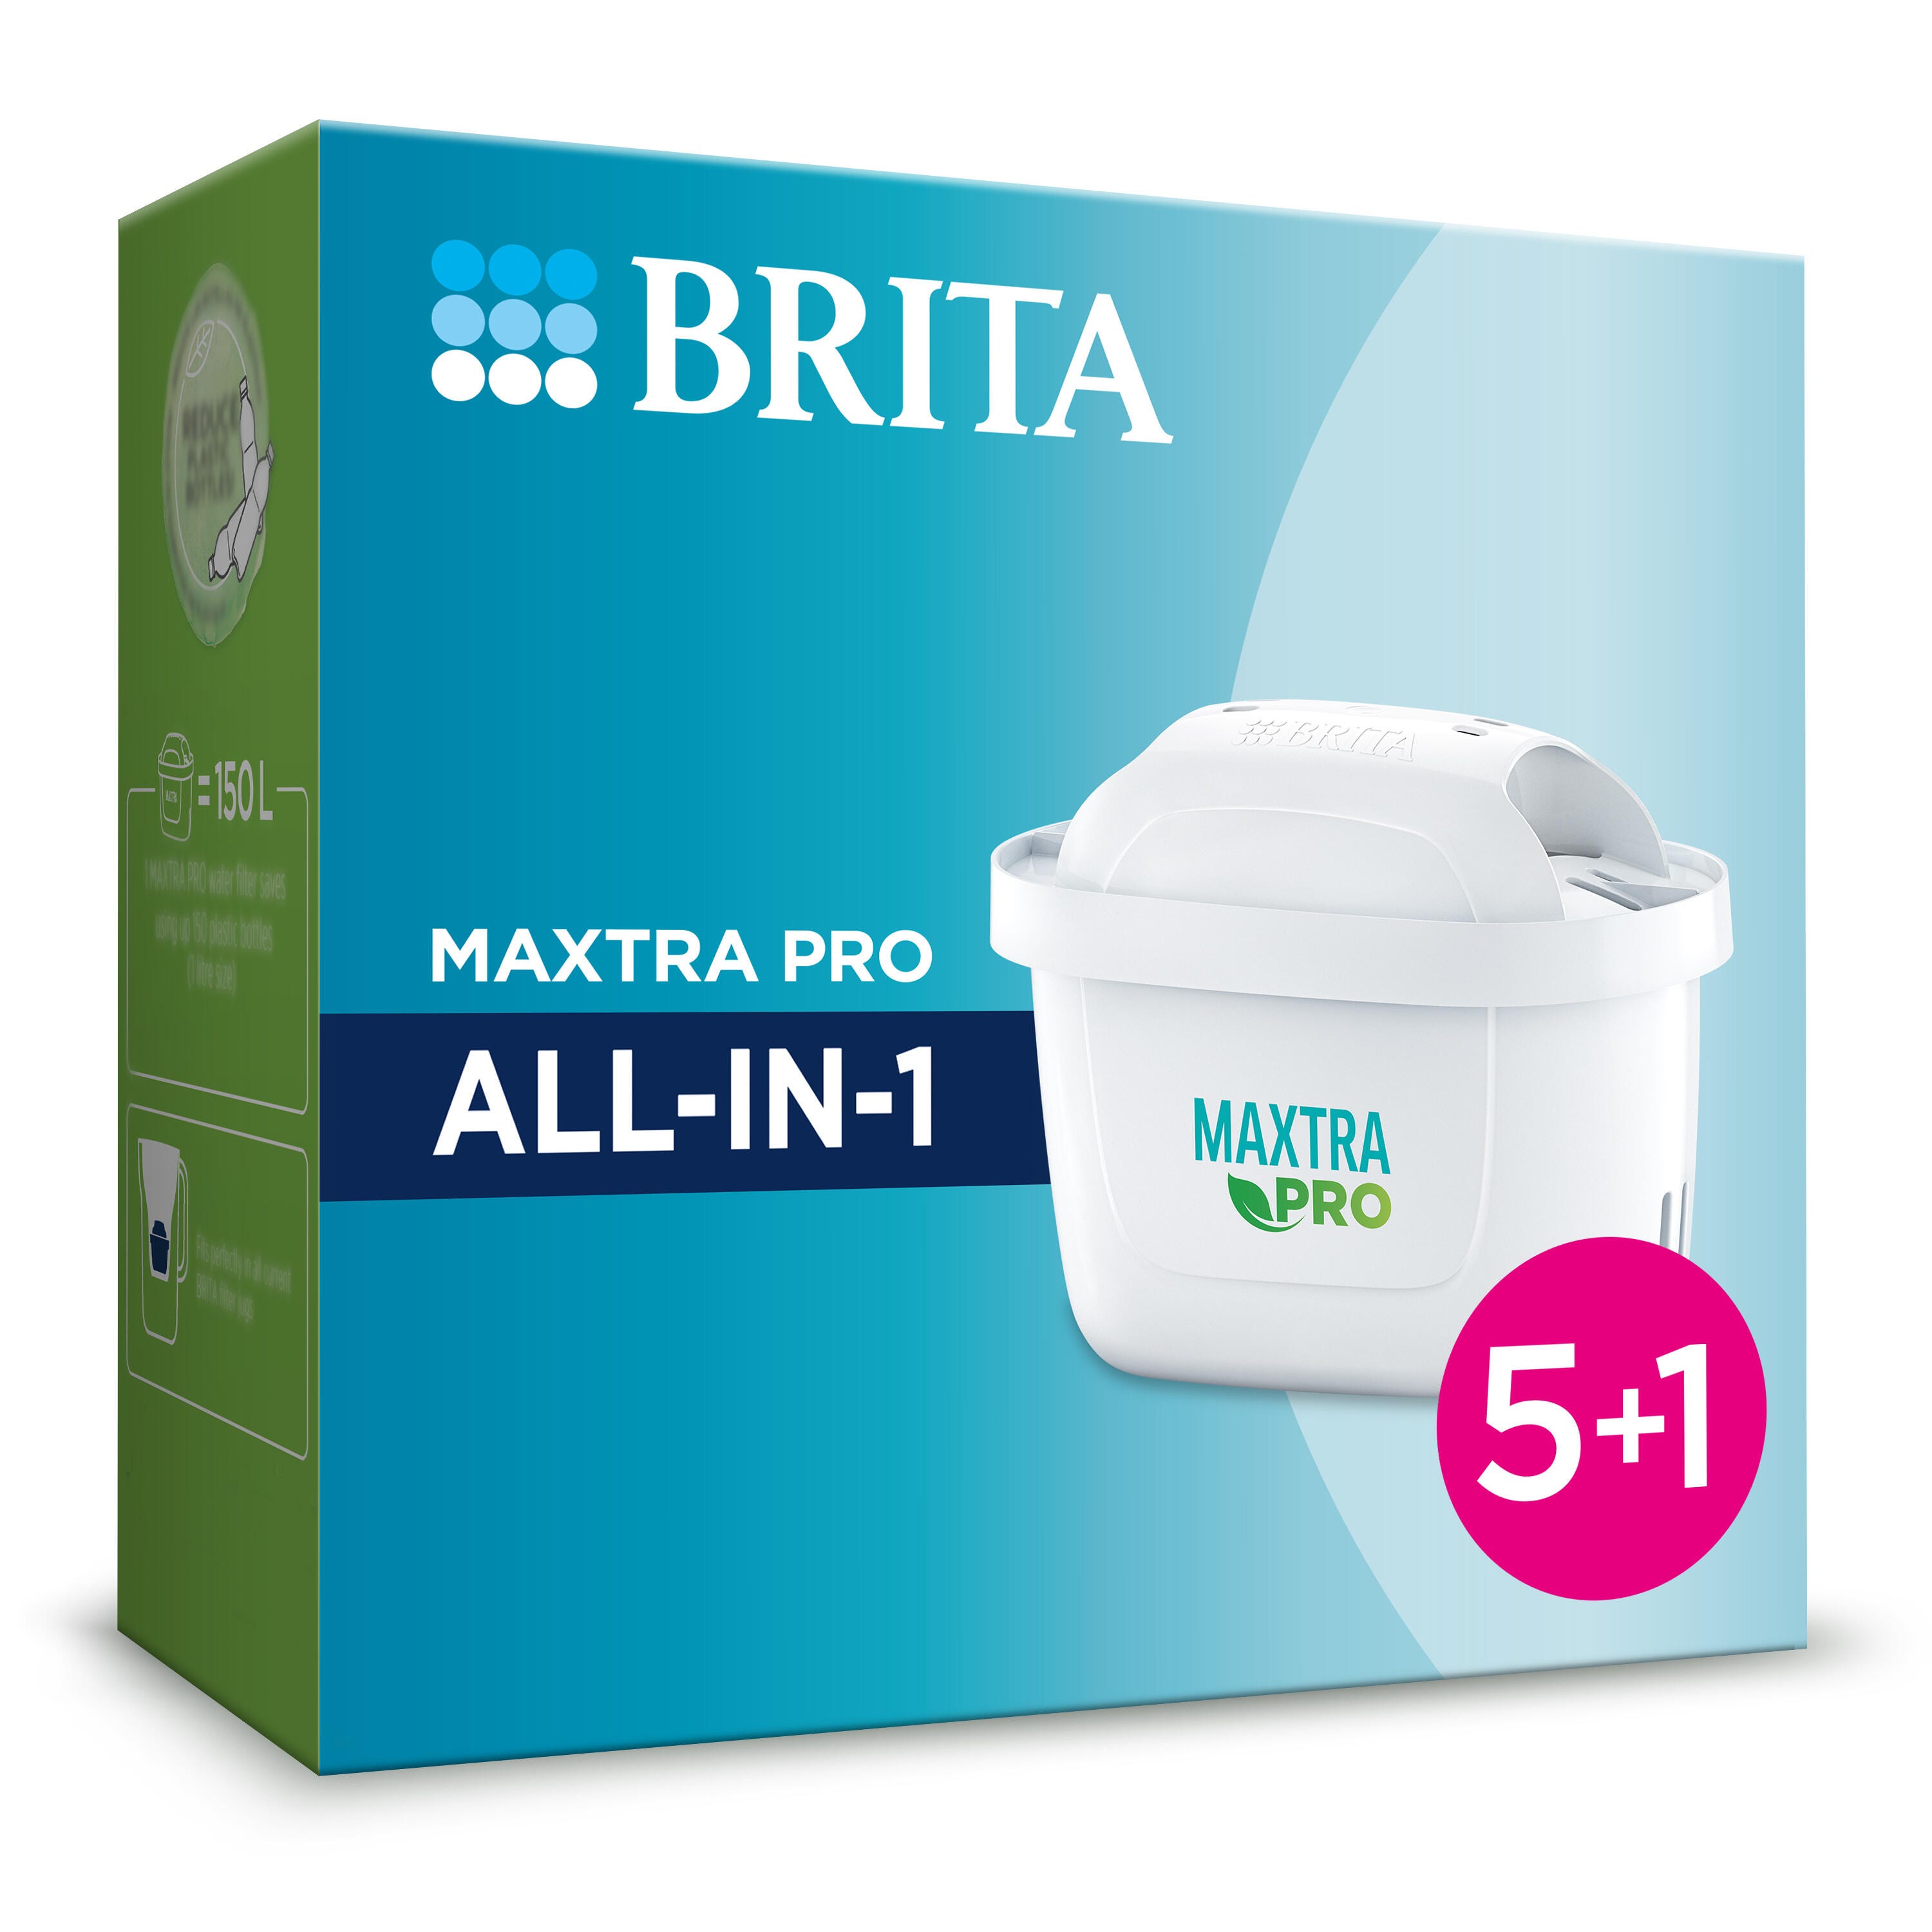 Jarra de Agua BRITA Marella + Pack 2 Filtros Maxtra